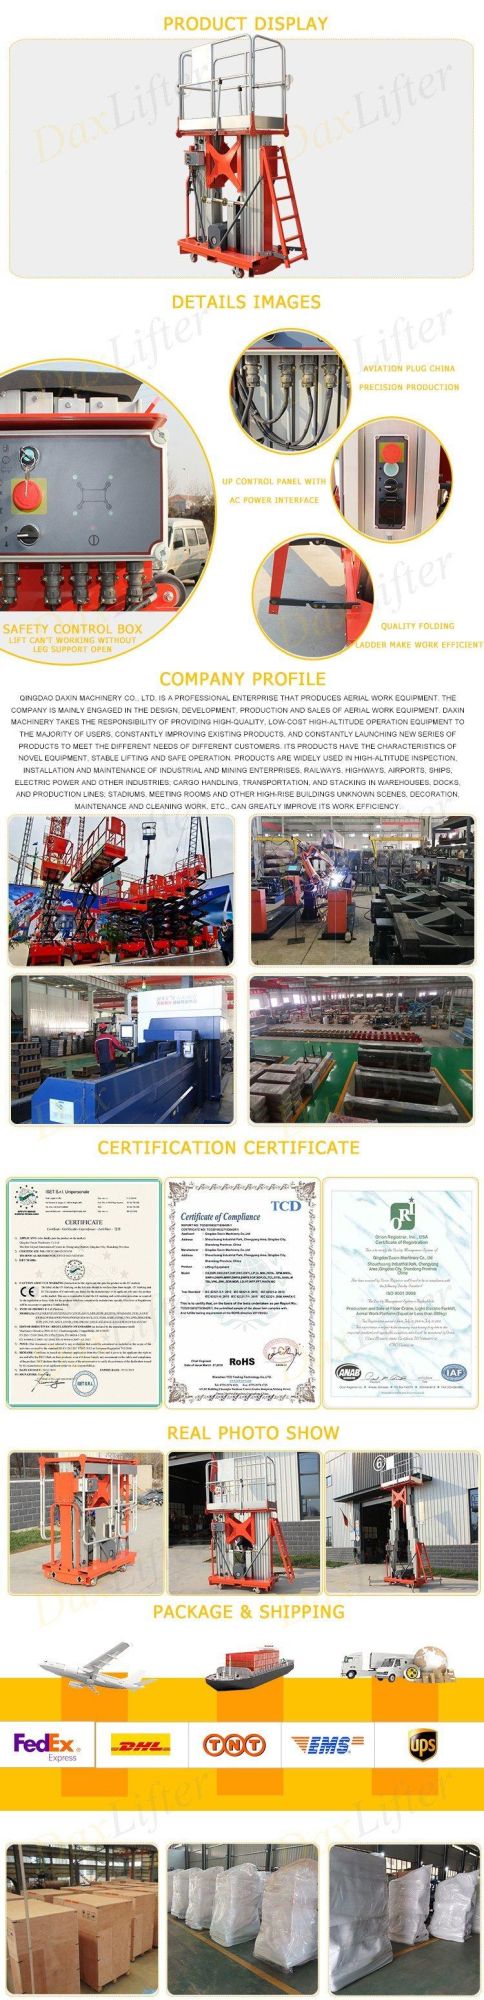 China Daxlifter Brand Hand Move Aluminum Aerial Work Platform Price